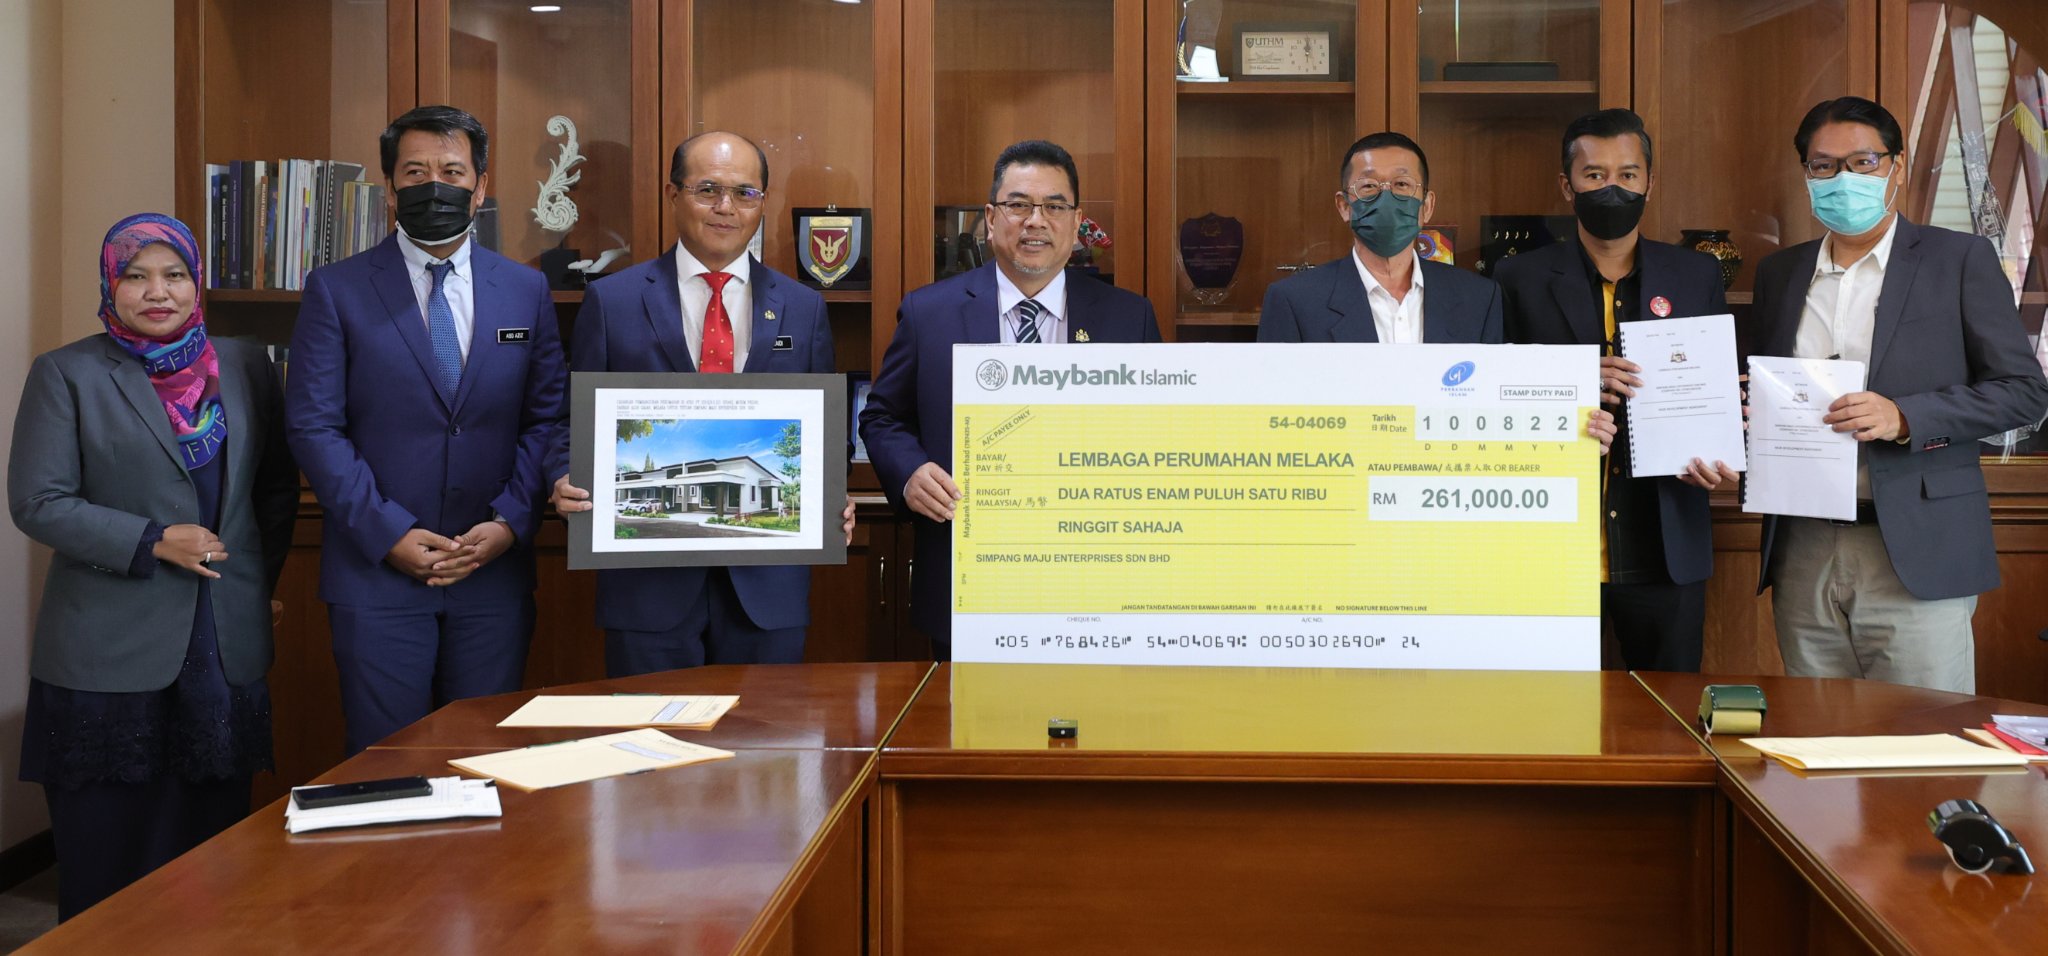 Lembaga Perumahan Melaka (LPM) bersama pemaju, Syarikat Simpang Maju Enterprise Sdn. Bhd. telah menandatangani perjanjian usahasama bagi pembangunan Rumah Kos Sederhana Rendah (RKSR) di atas lot HSD 32546, PT 2315, Mukim Pegoh, Daerah Alo Gajah, Melaka seluas 5,203.5 meter persegi pada 10 Ogos 2022.